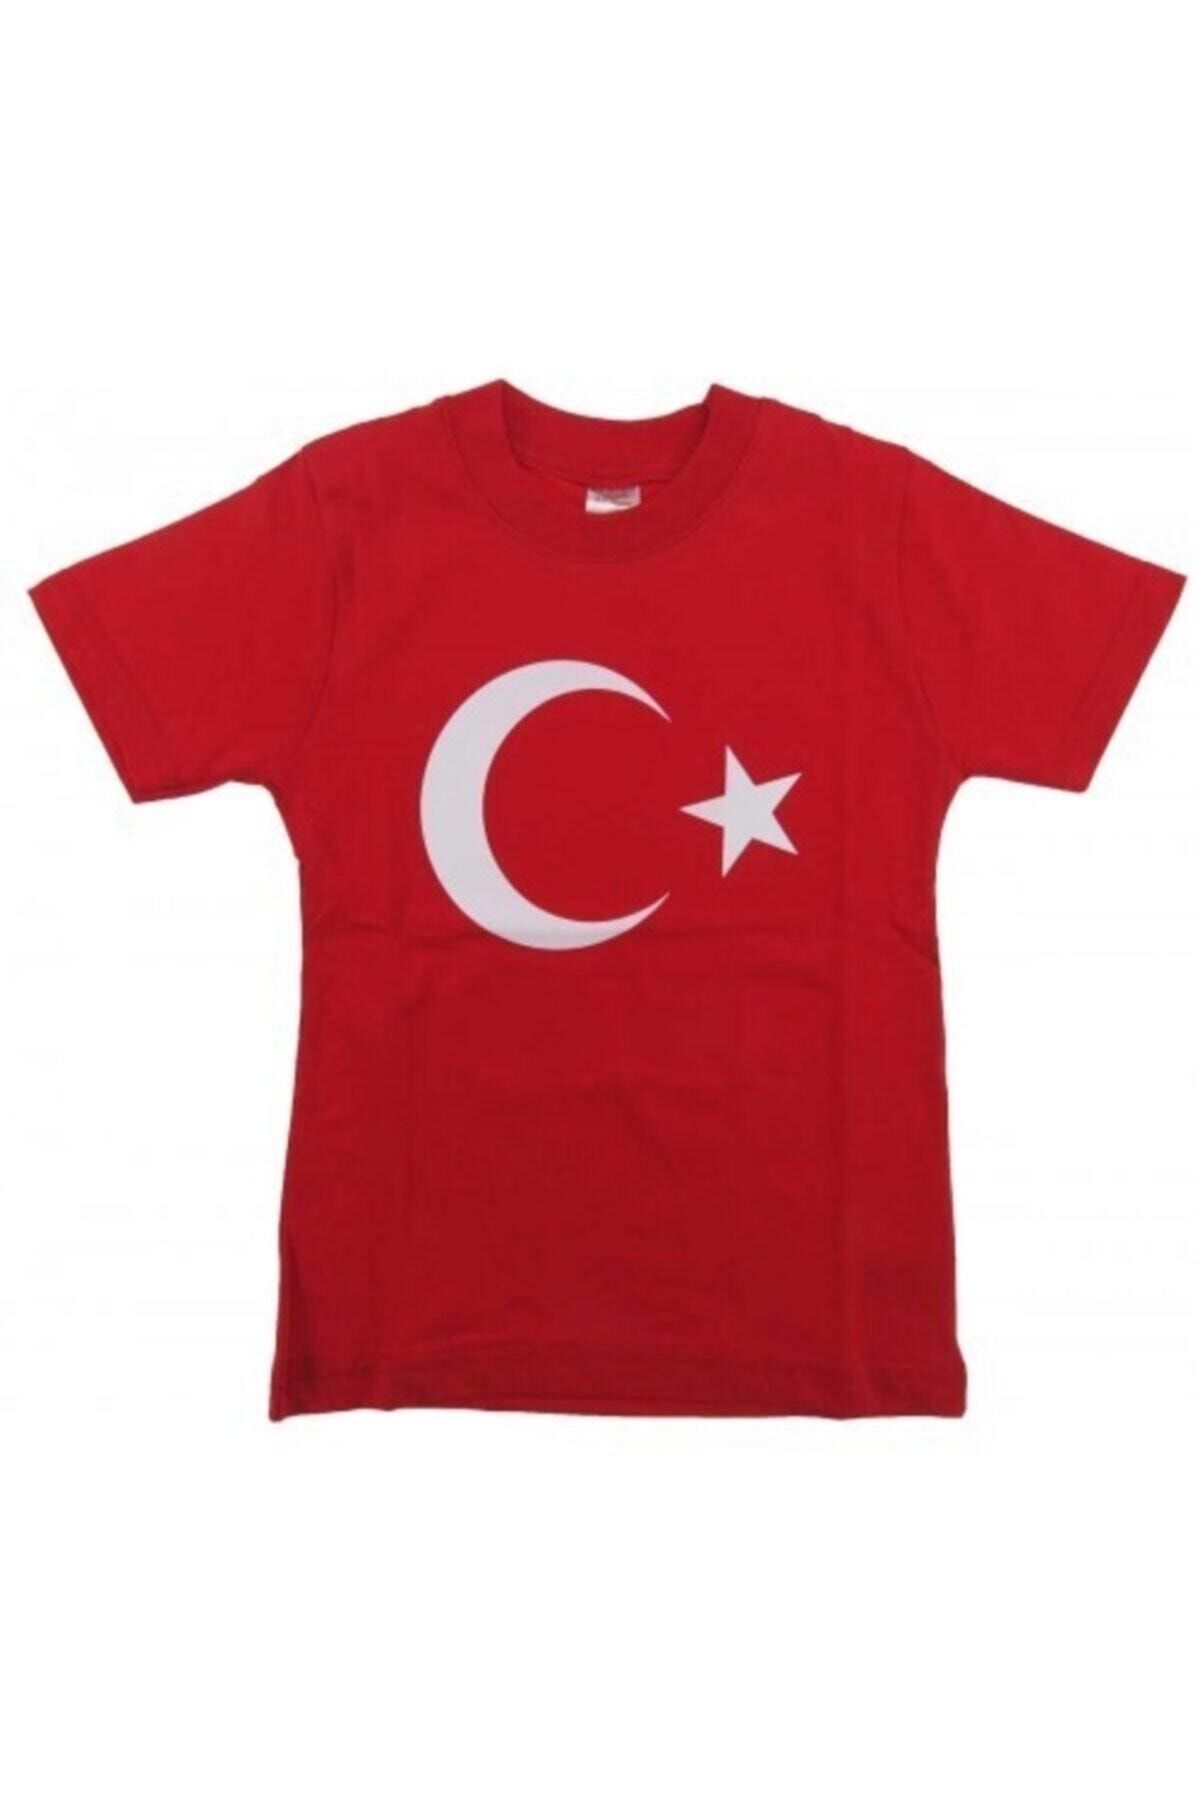 pazariz Unisex Çocuk Kırmızı Ay Yıldız Türk Bayraklı T-shirt